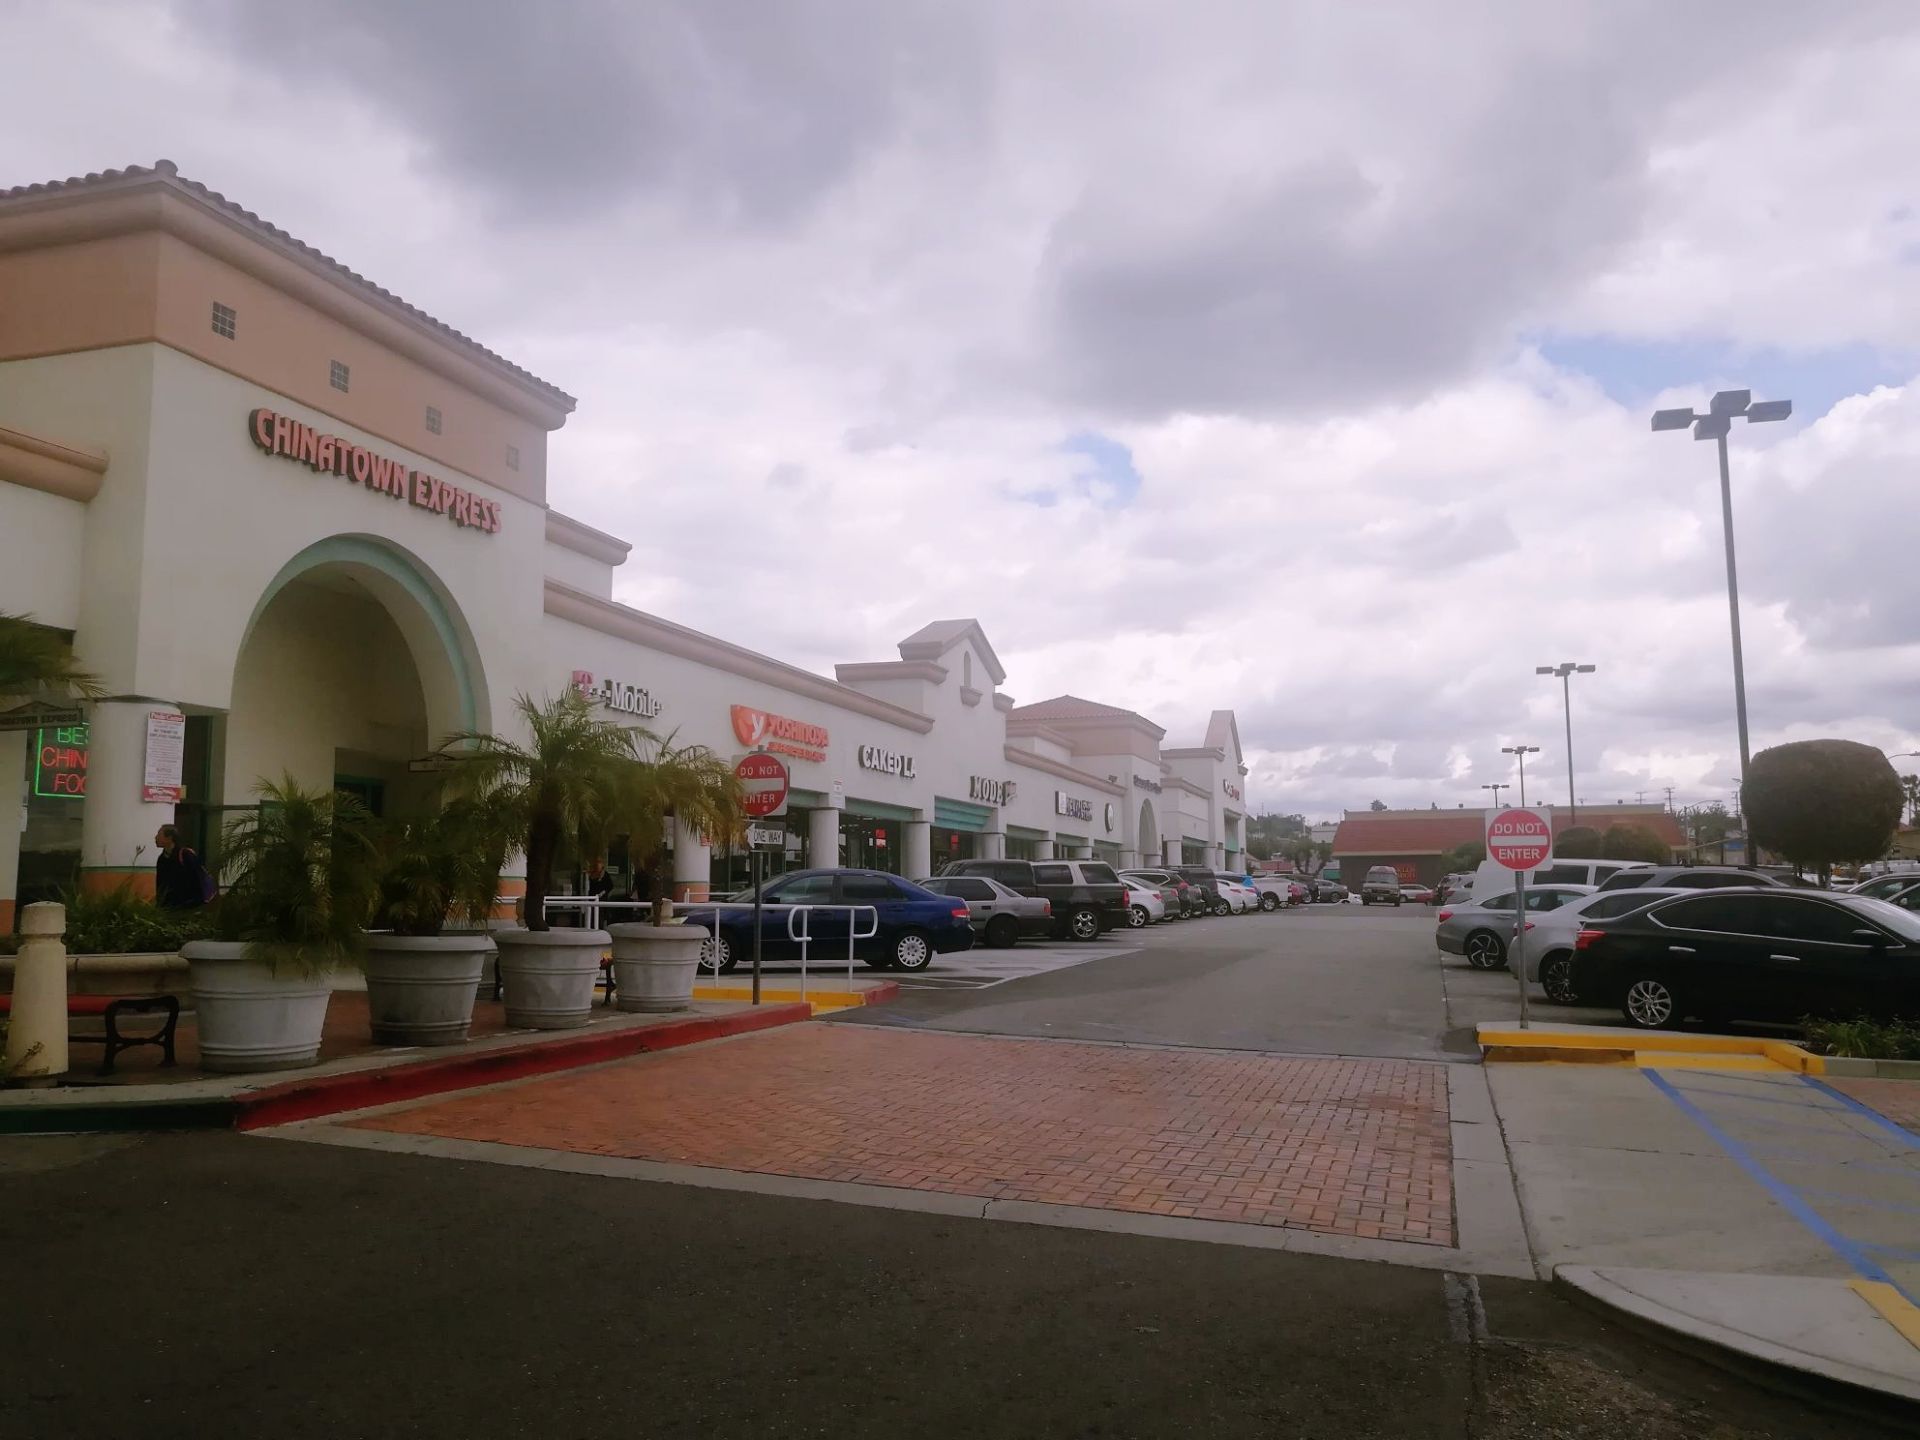 普拉多中心，Prado Center，是一个购物中心，在大西洋大道（Atlantic Ave）旁，近